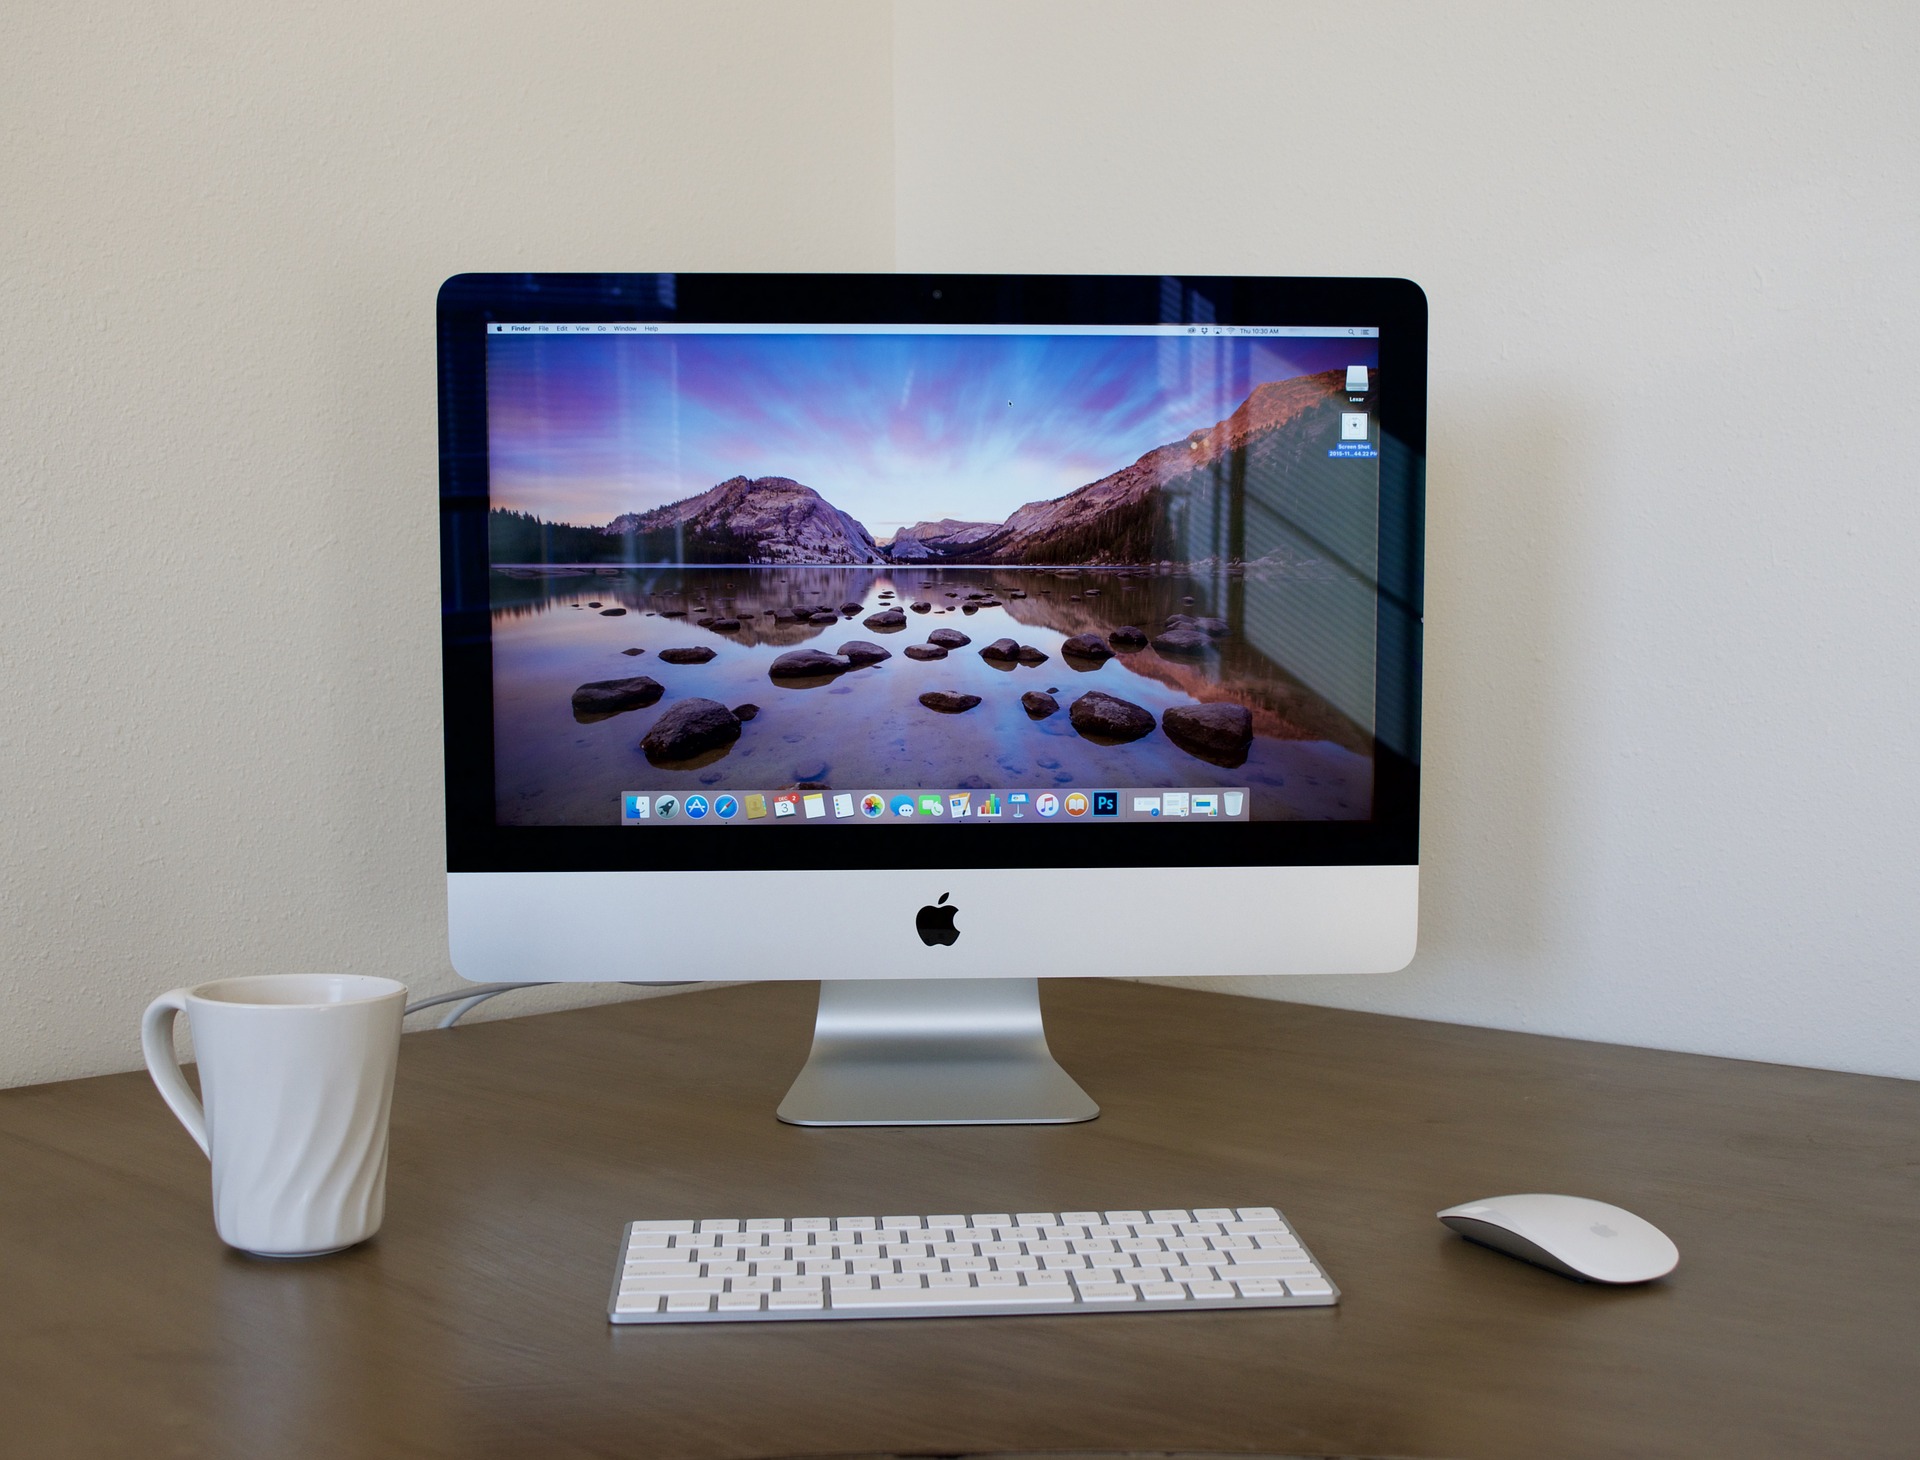 Nakon godina ustaljenog dizajna, Apple je 2012. godine predstavio novi iMac s već sada pomalo legendarnim aluminijskim kućištem. Zbog zaobljenosti prema sredini stražnje stranice računala, bočne stranice iMaca su iznimno tanke pa kompjuter djeluje kao da lebdi u prostoru. U međuvremenu, Apple je predstavio i iMac Pro, iznimno snažan kompjuter s Intel Xeon procesorima, no u kompaktnijem kućištu nalik prvom iMacu.